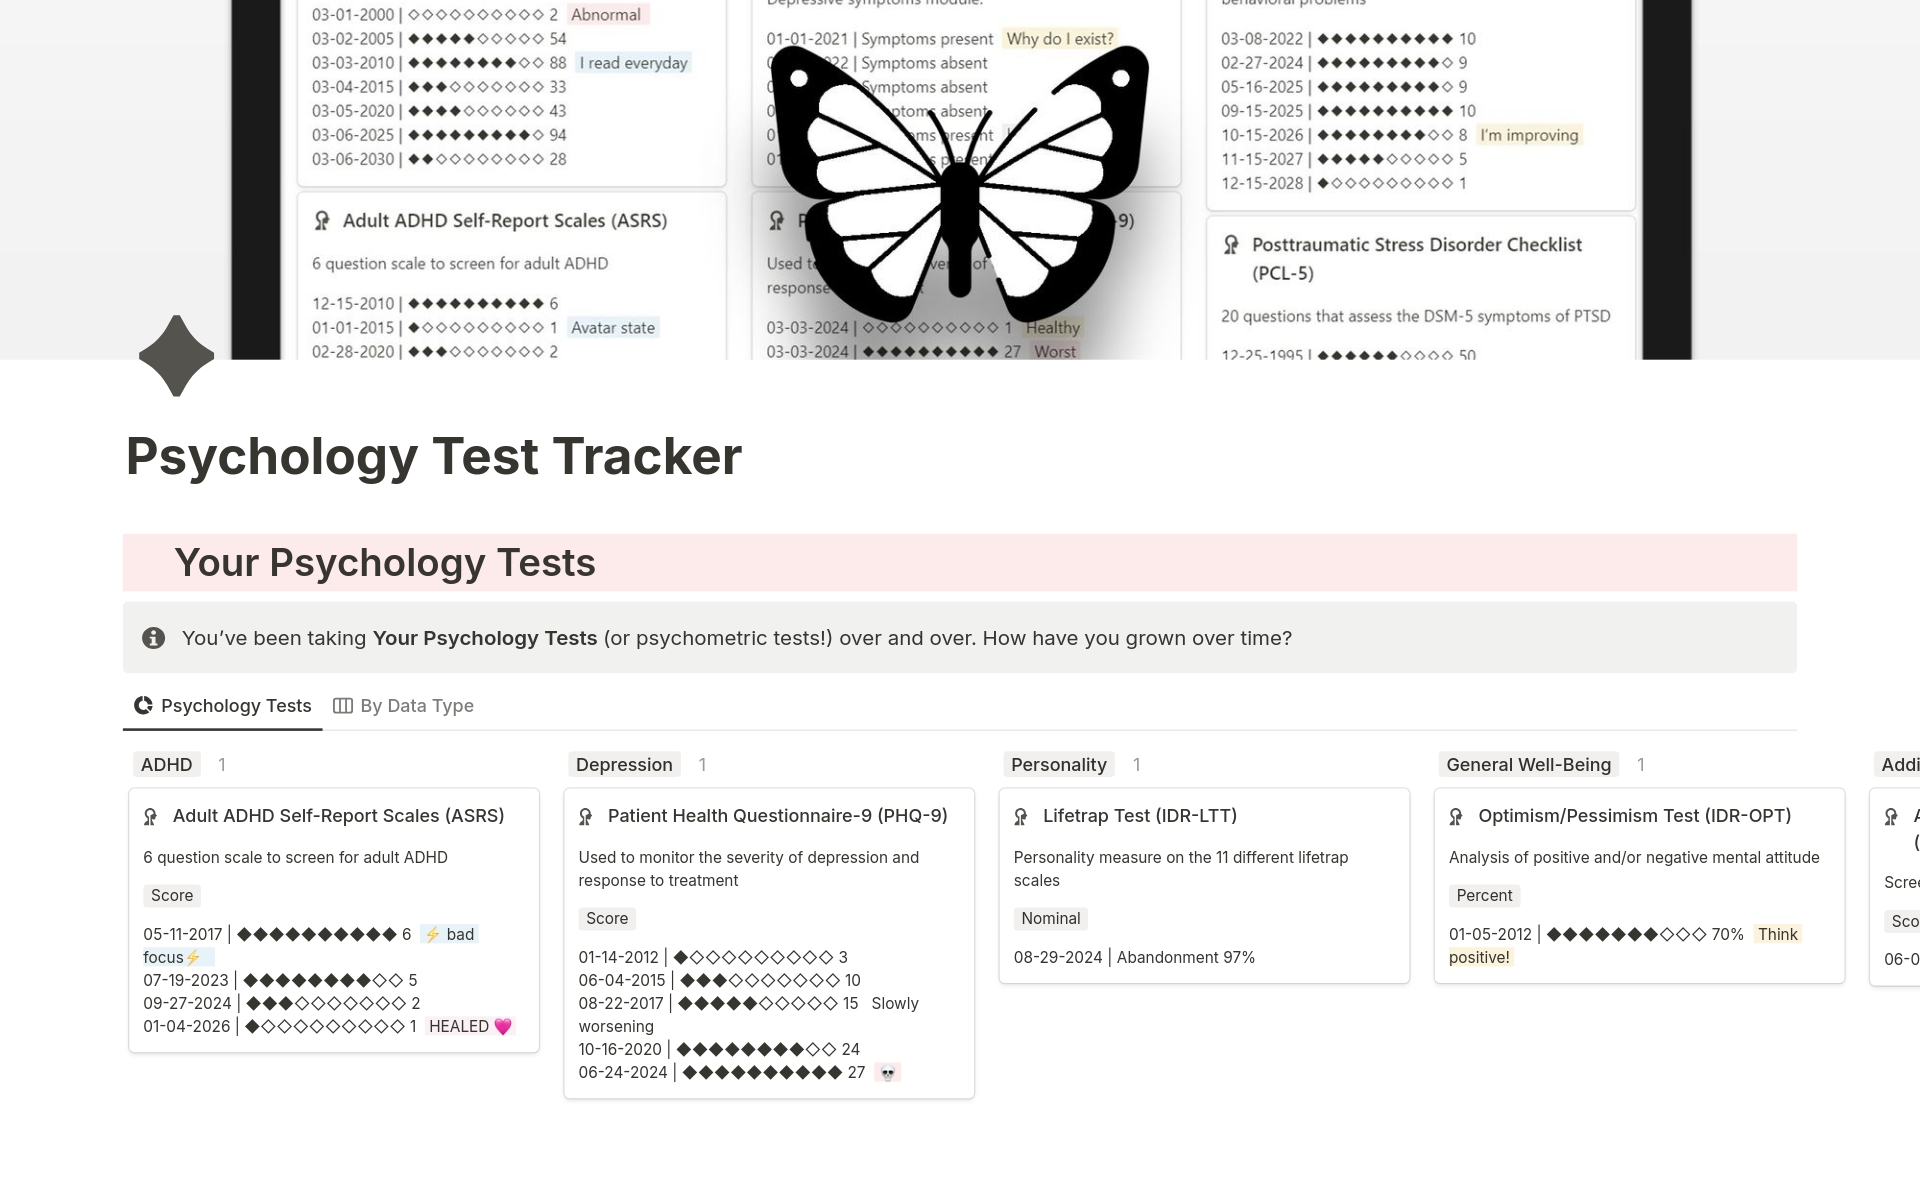 Aperçu du modèle de Psychology Test Tracker